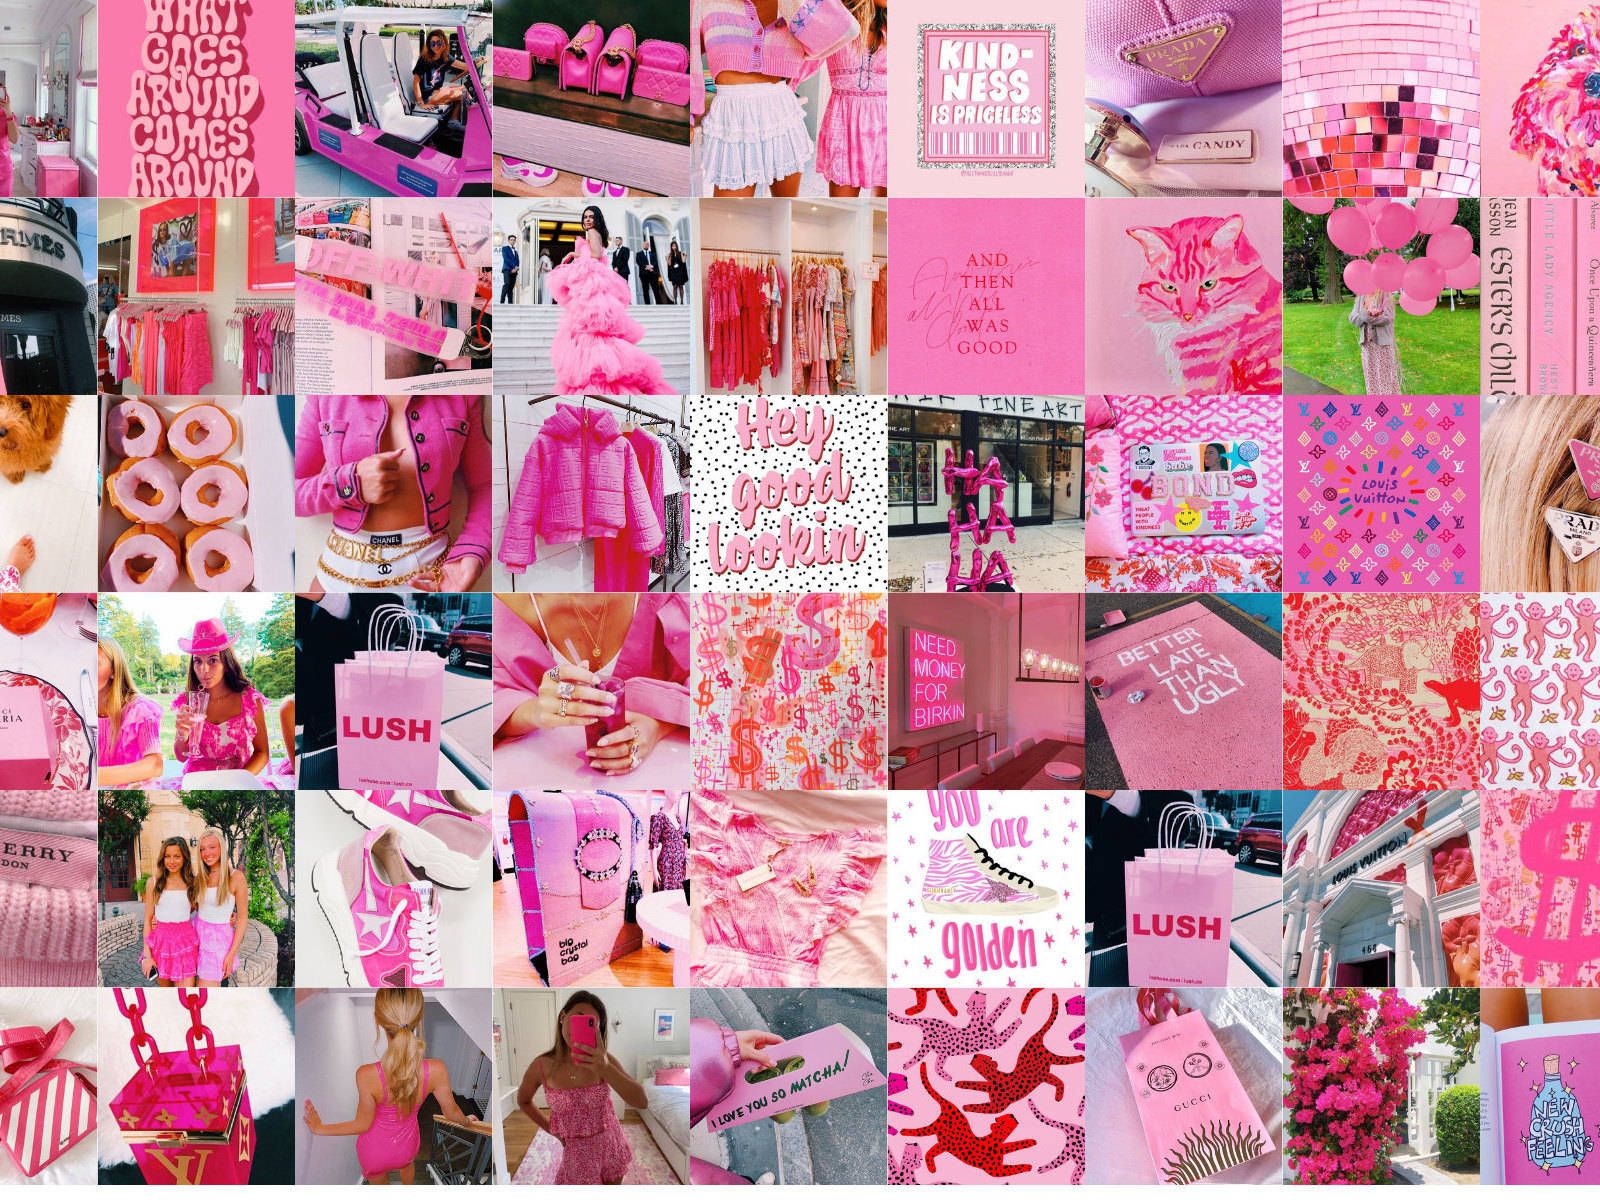  Schön Hintergrundbild 1600x1200. Downloaden Allesin Pink Tumblr Mode Schön Profilbild Wallpaper